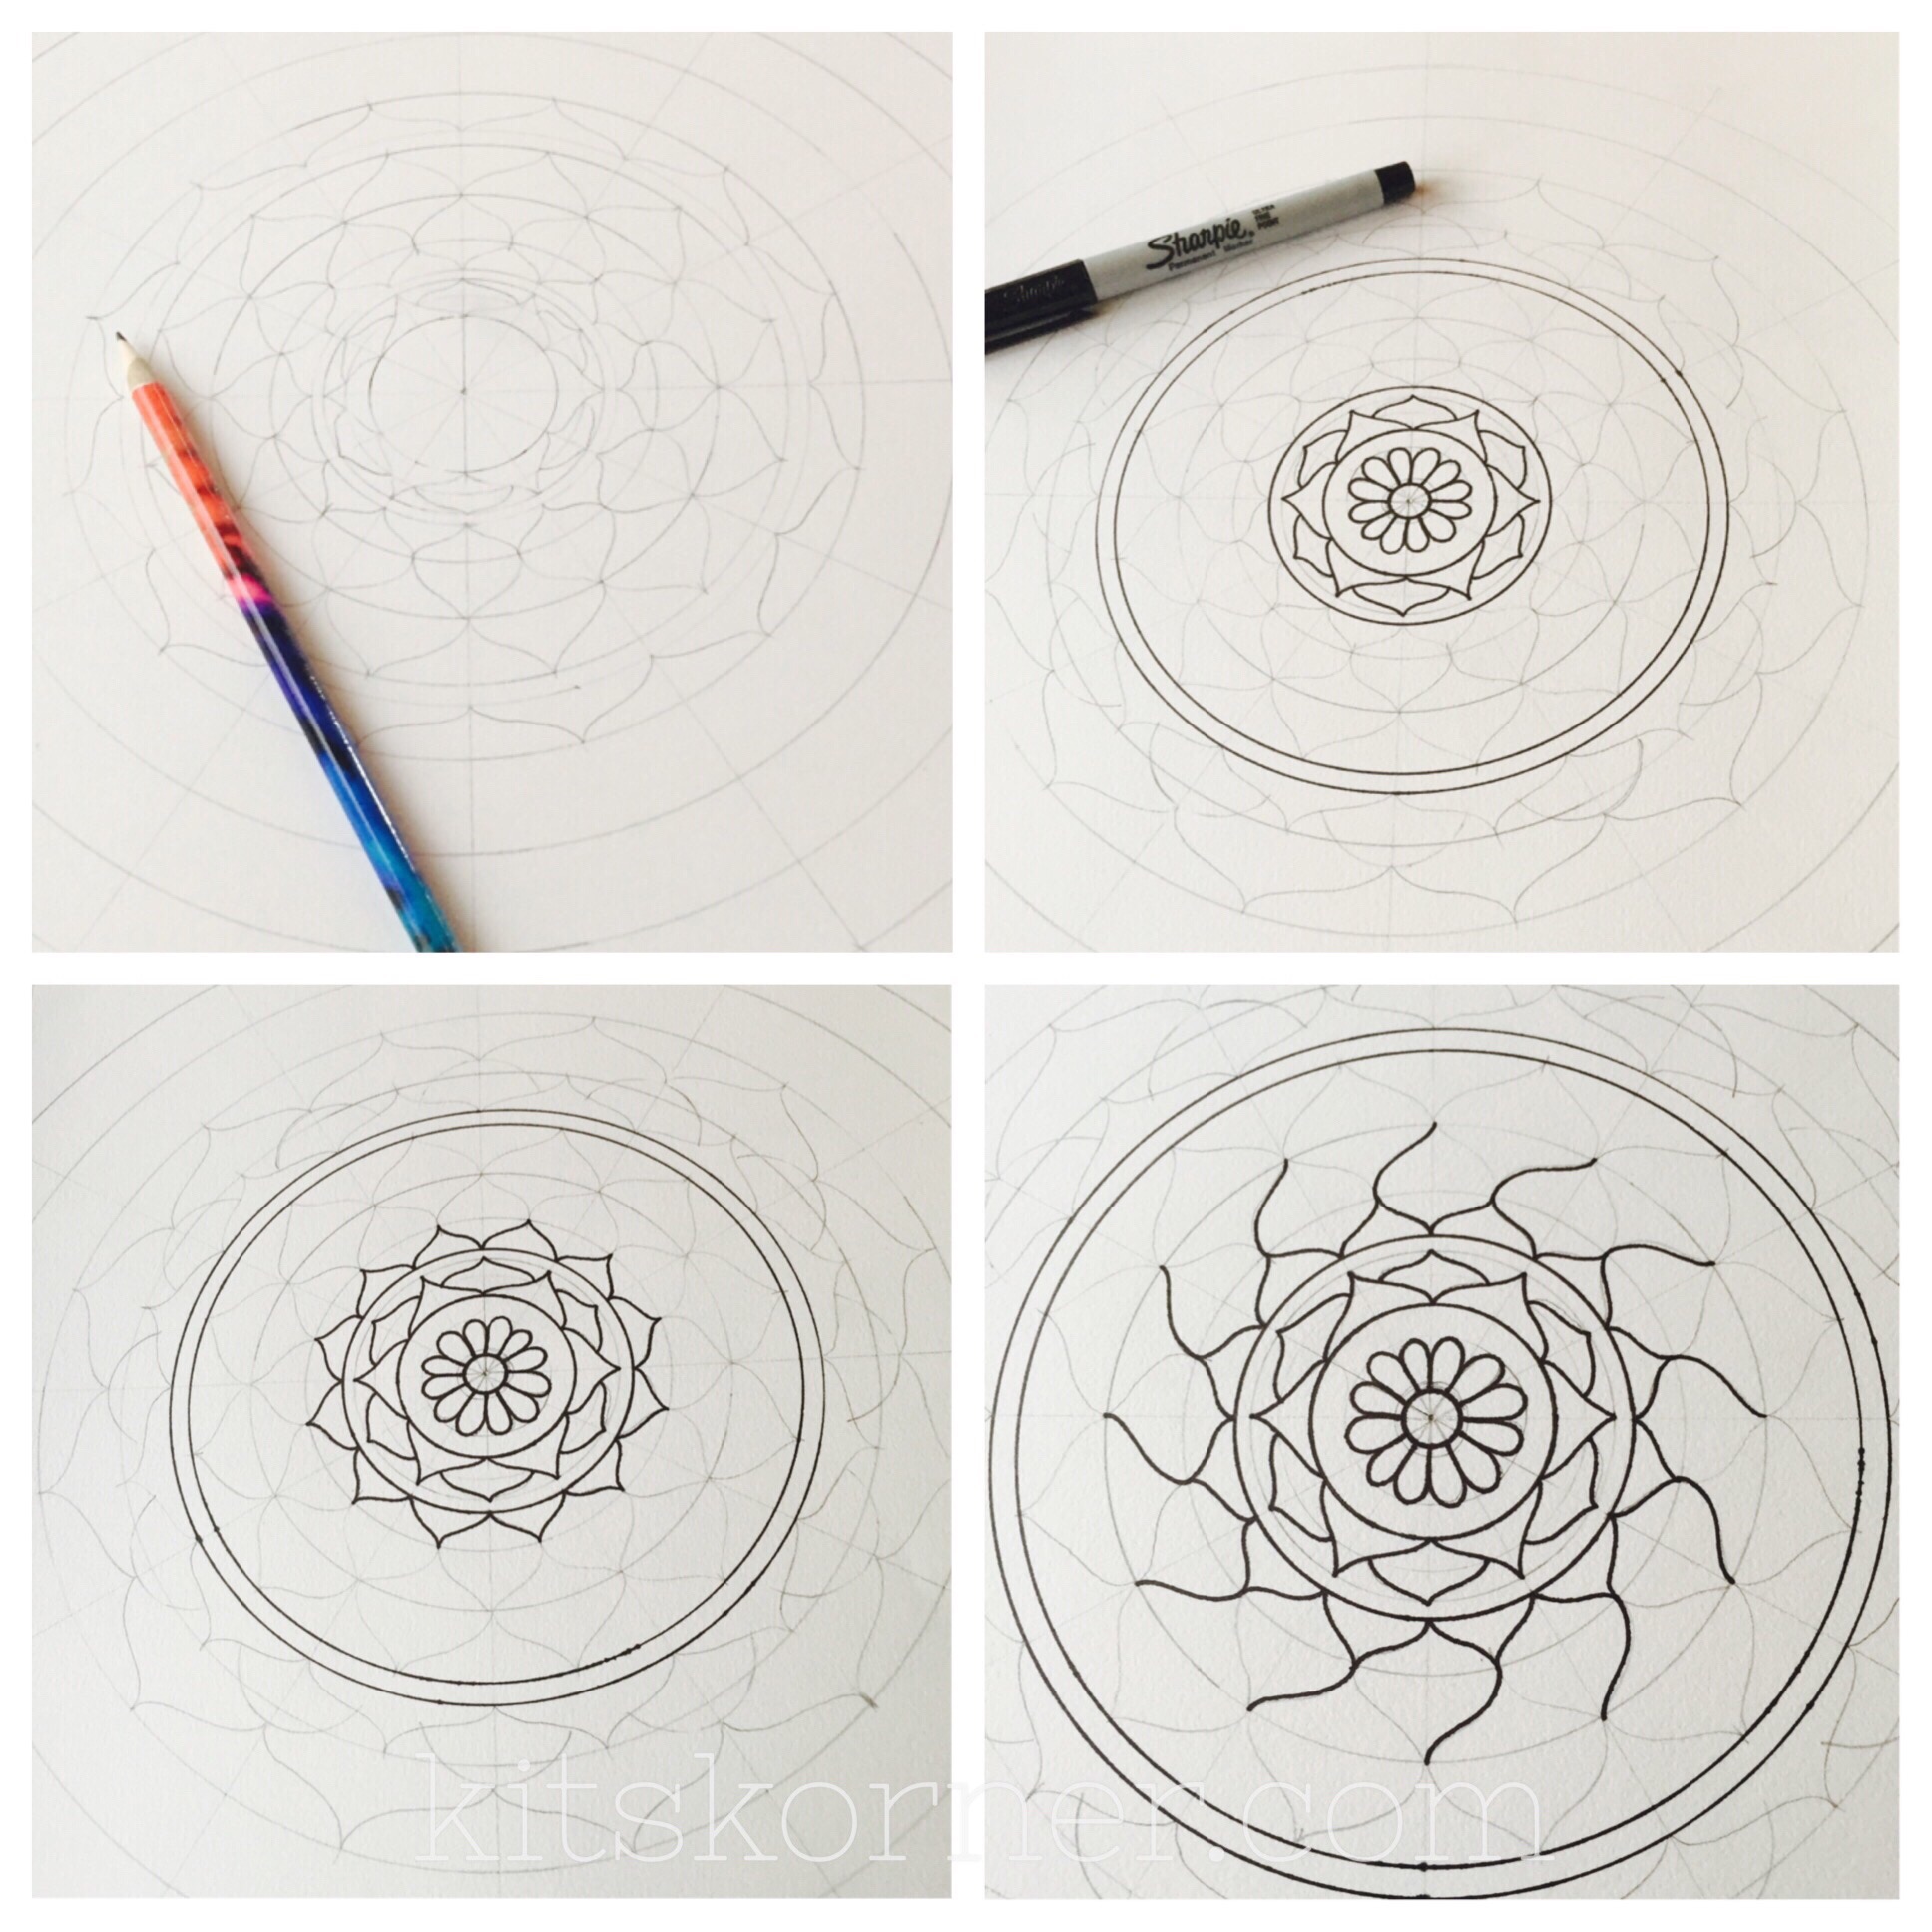 Sketchbook : The Making of a Mandala @ kitskorner.com